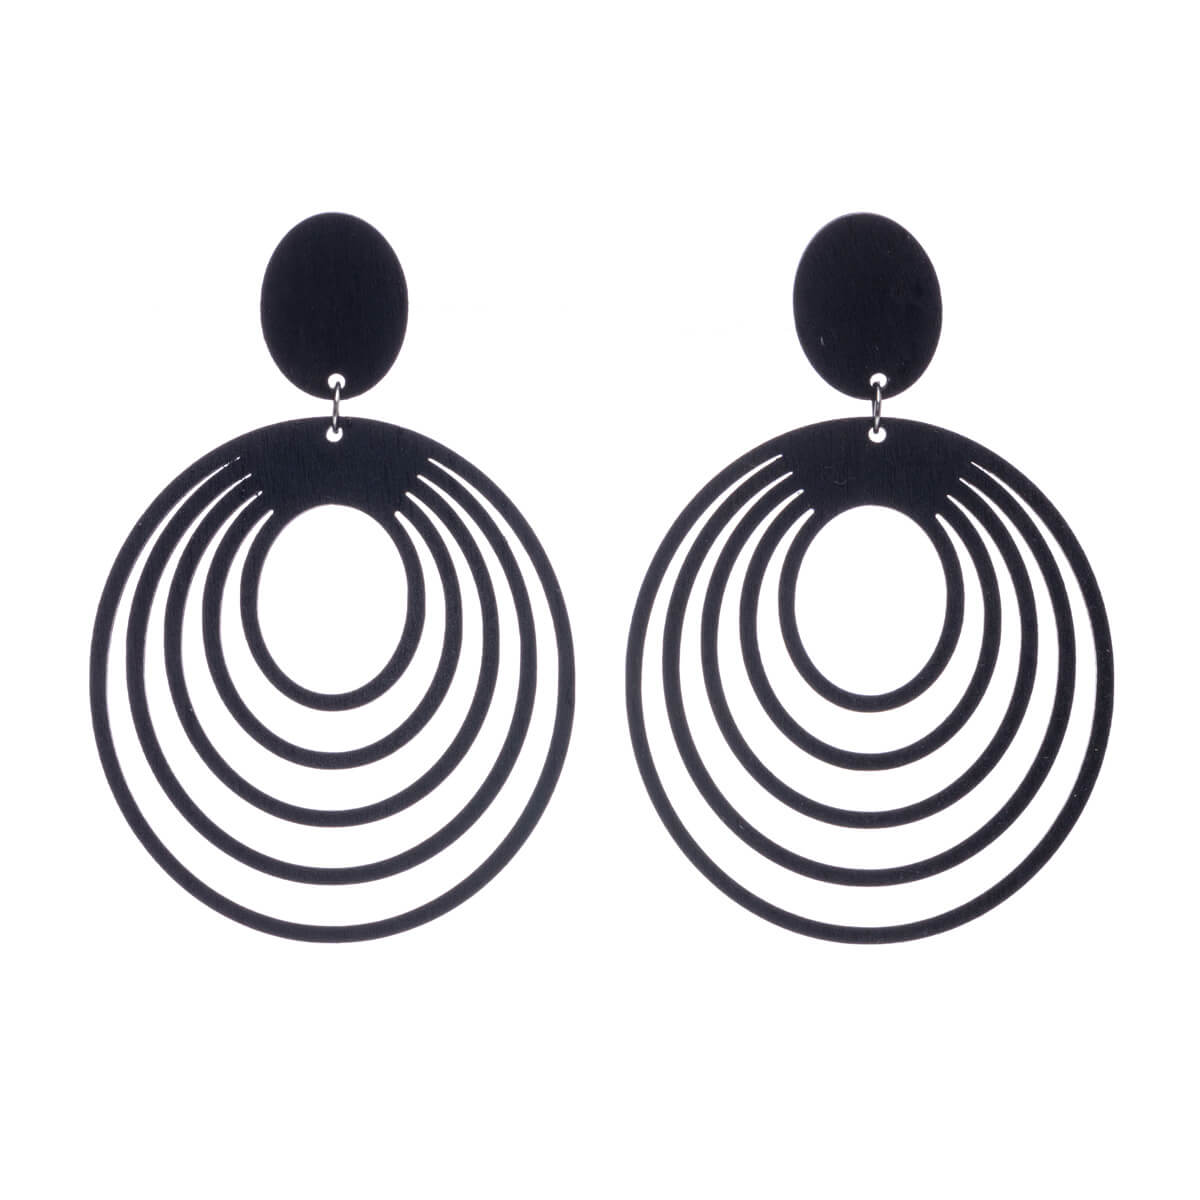 Water rings for wood earrings (Steel 316L)